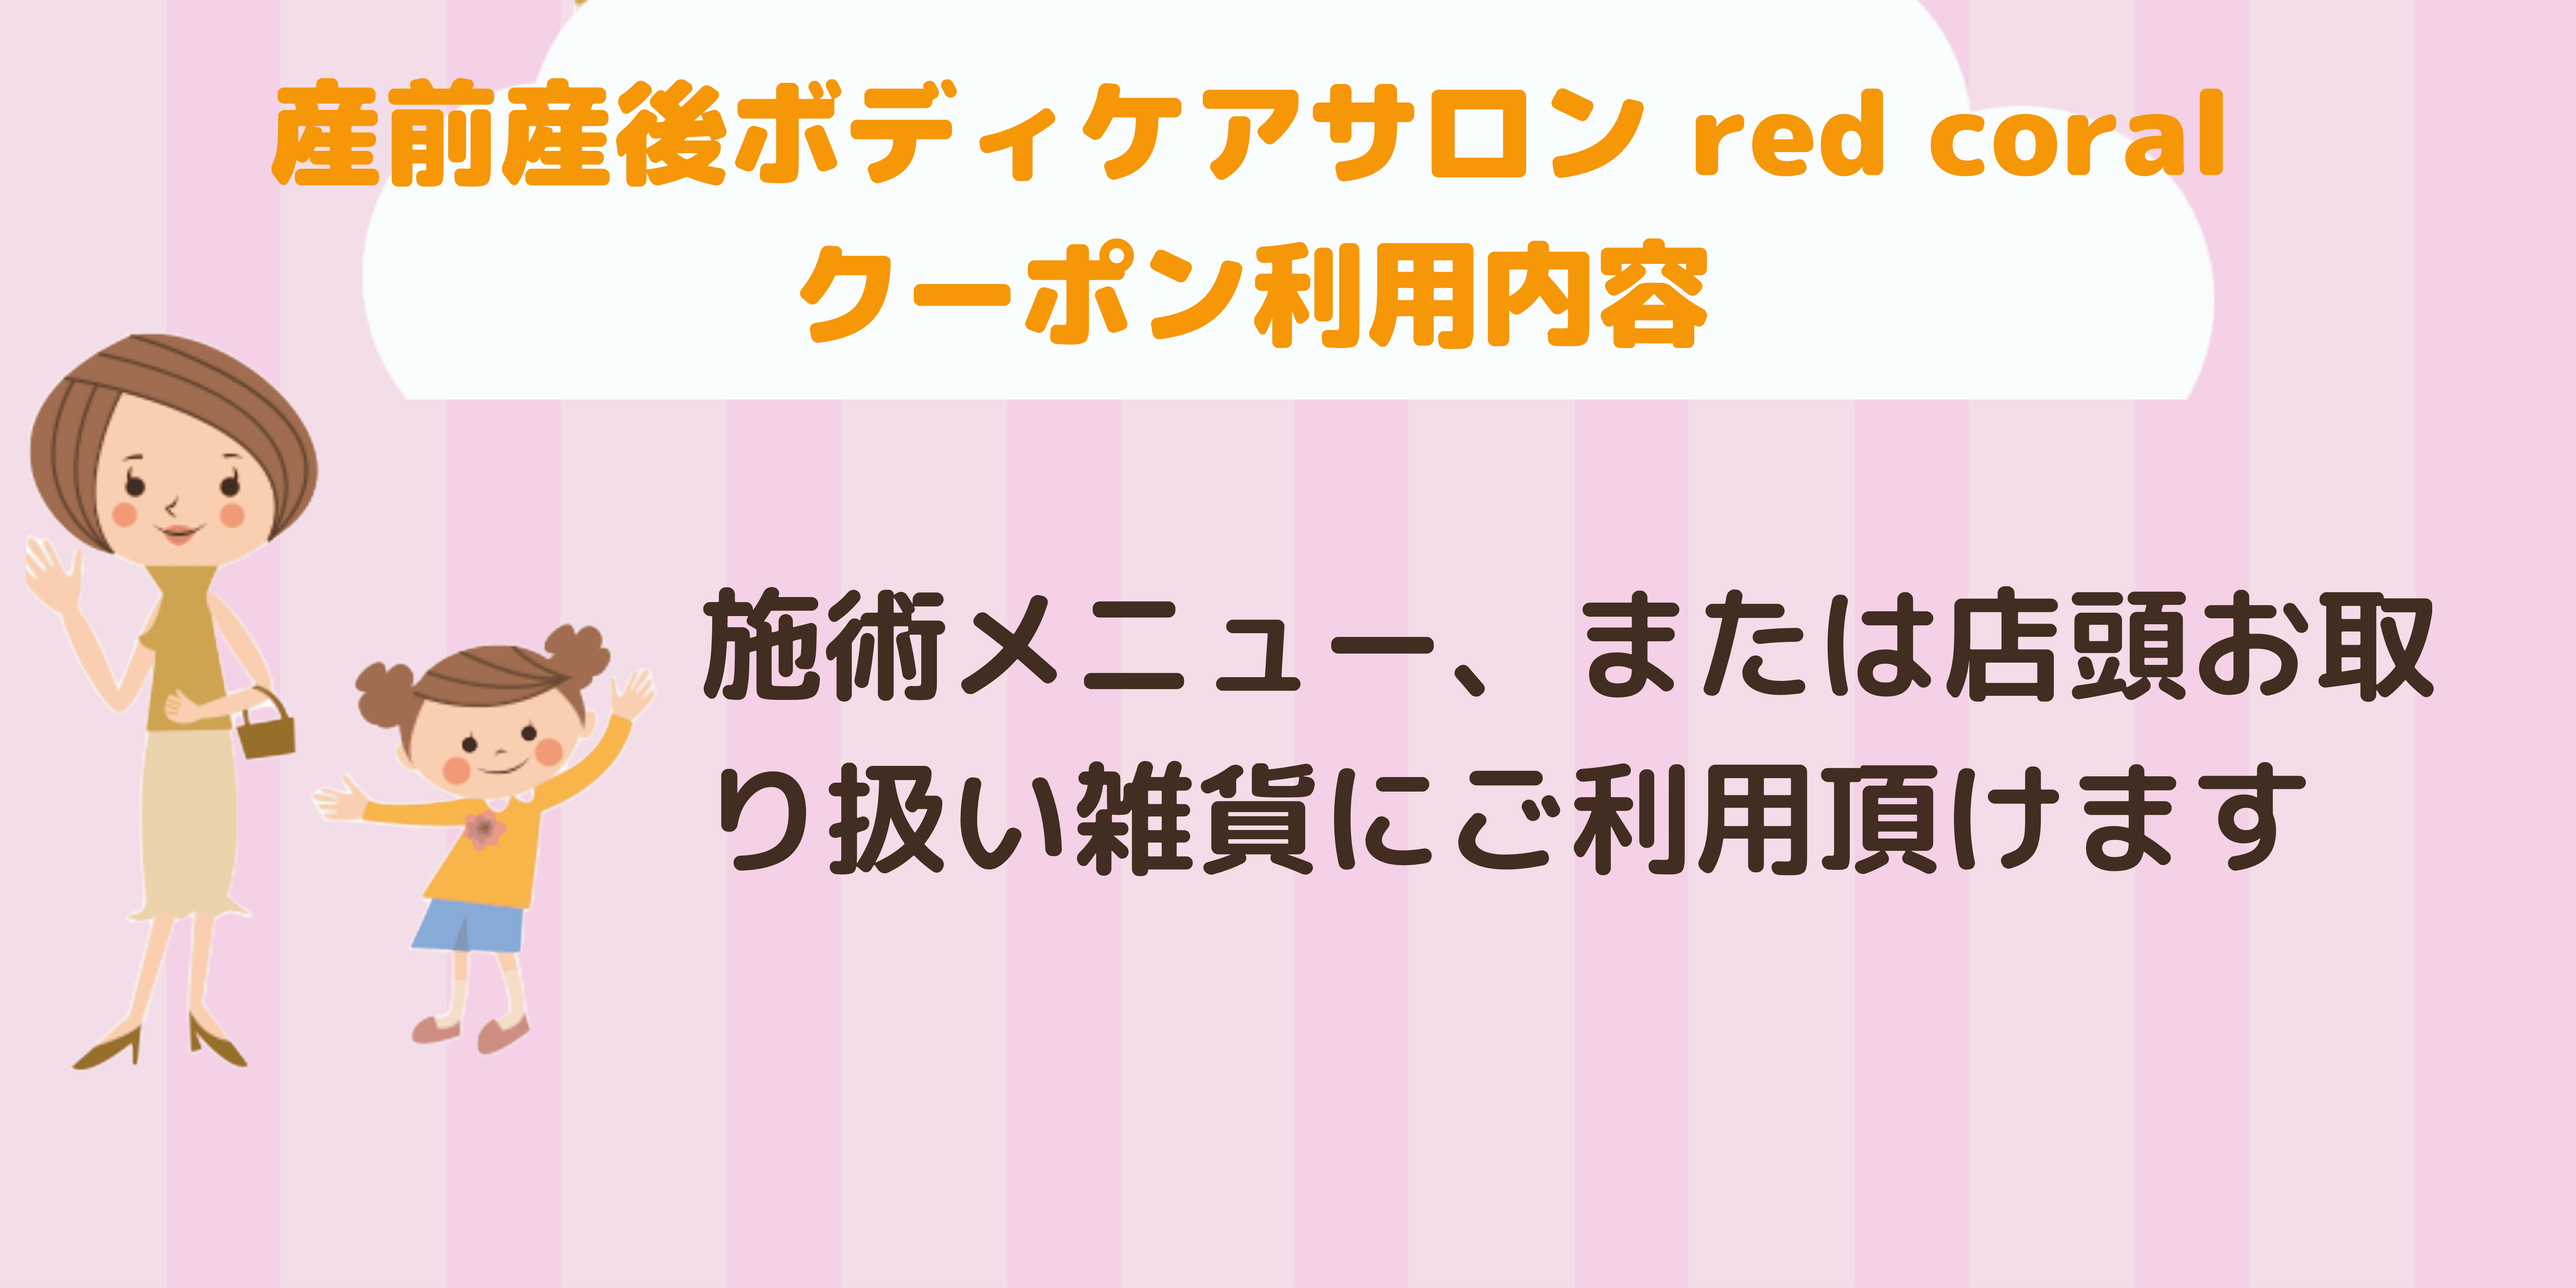 産前産後ボディケアサロン red coral-1